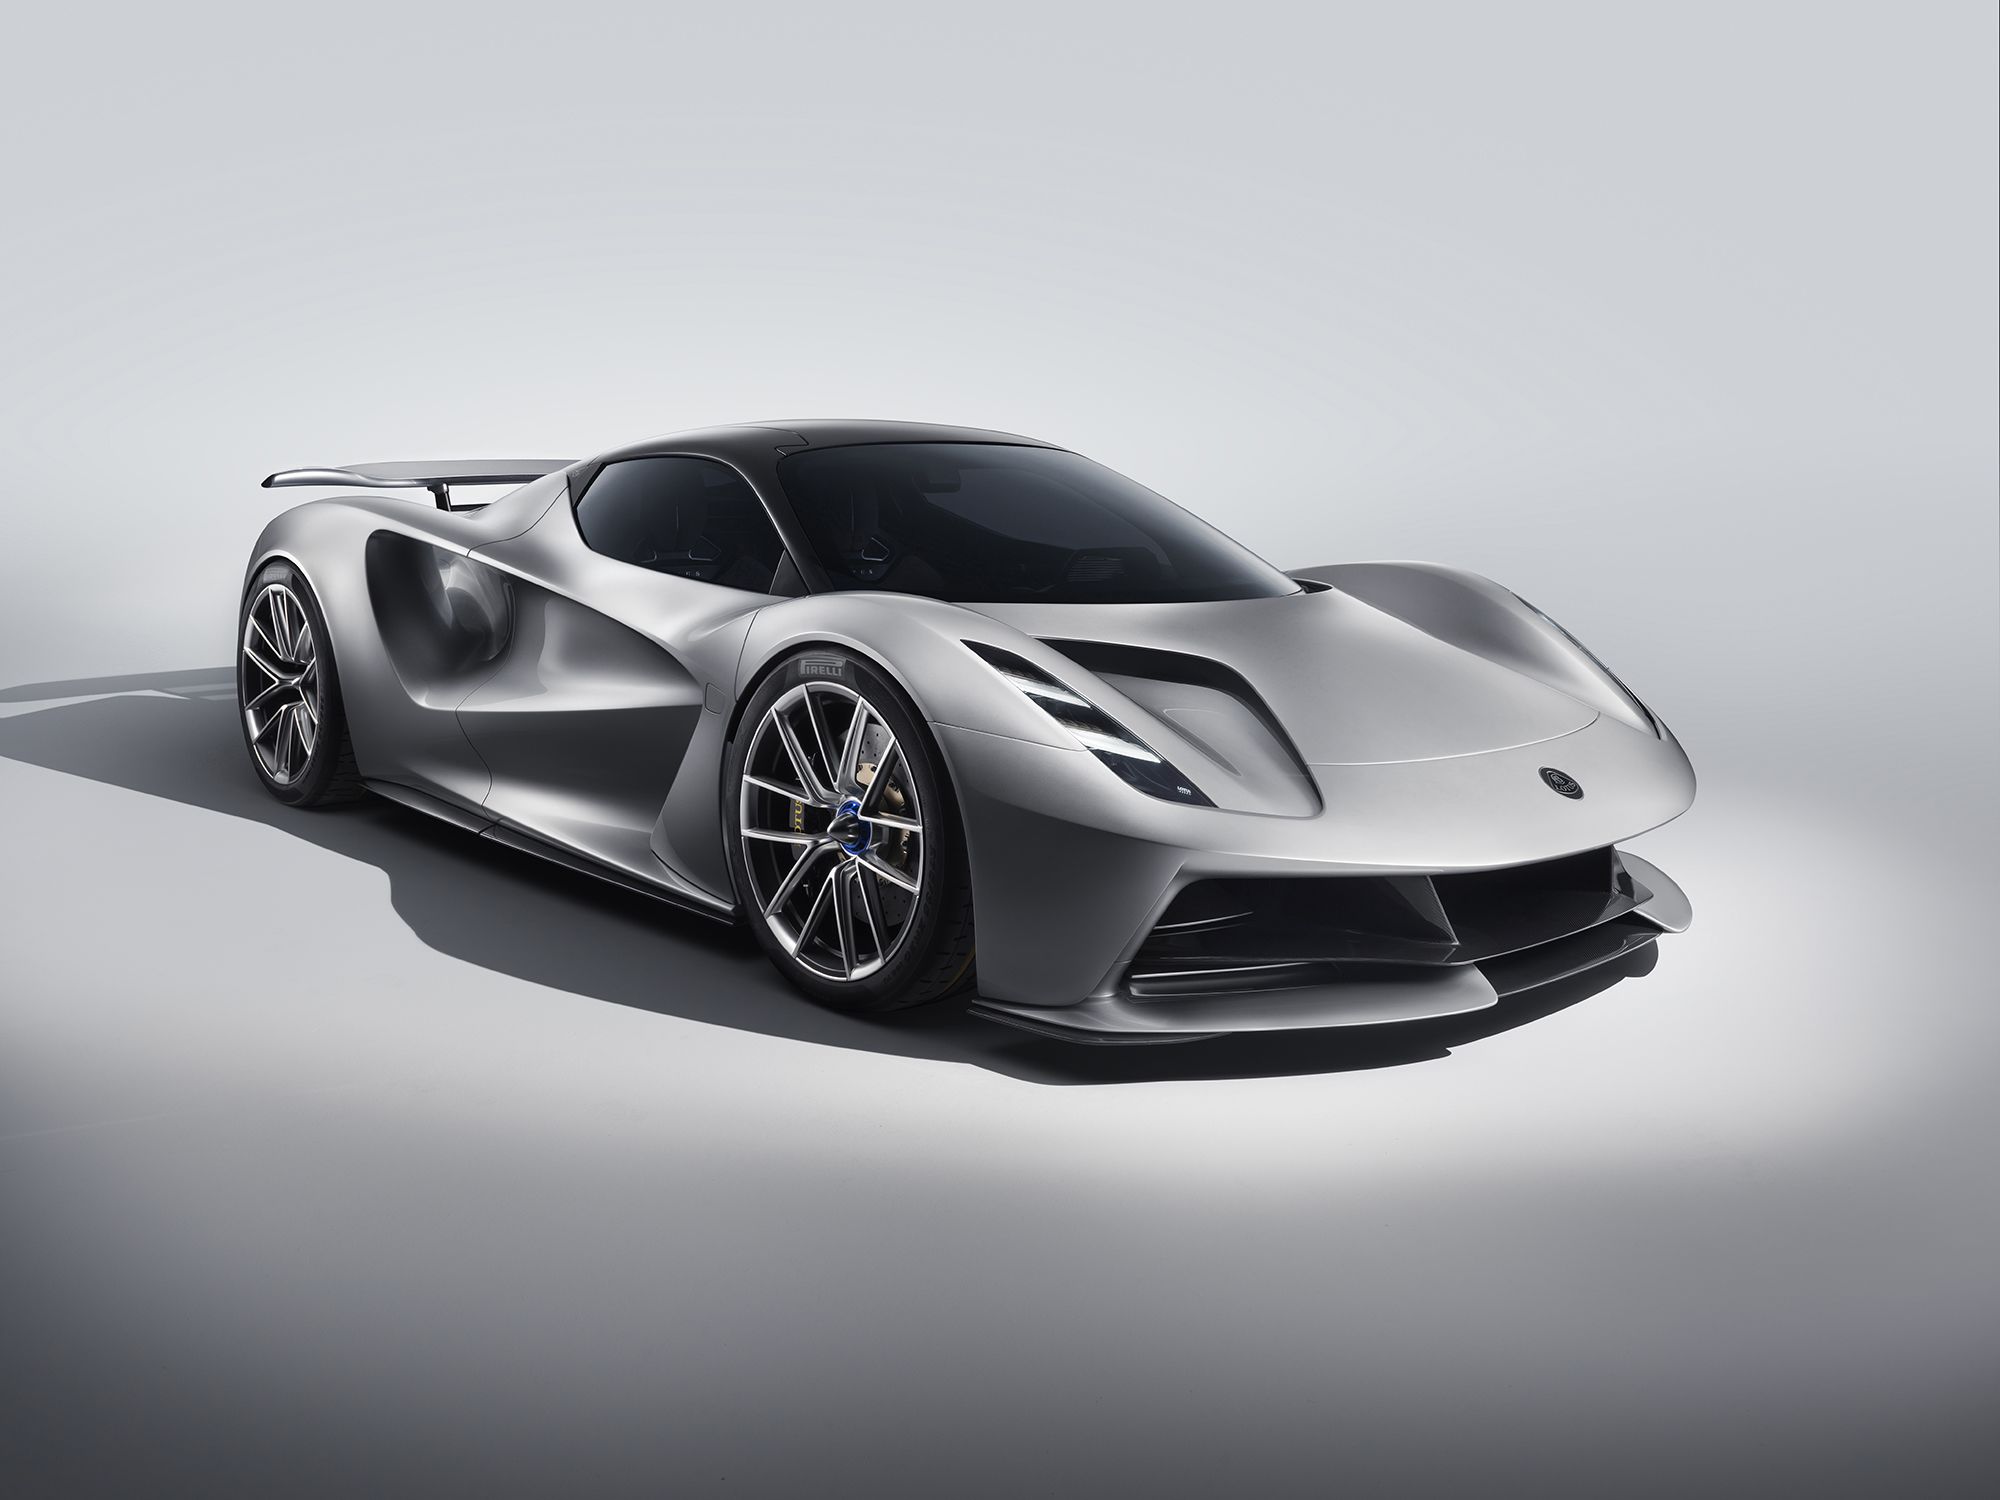 Lotus unveils $2 million electric supercar